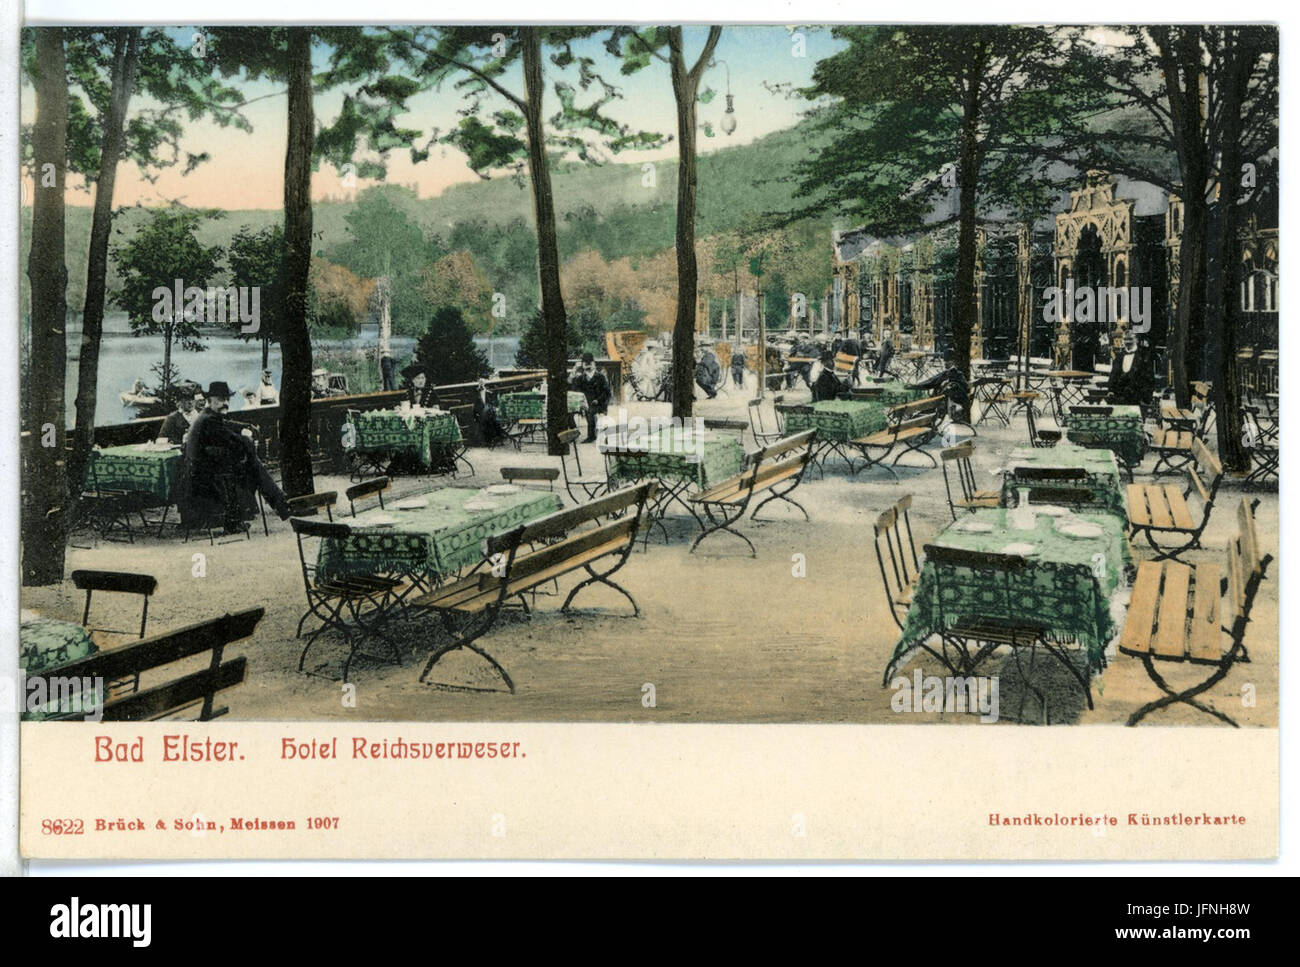 086 -Bad Elster-1907-Hotel Reichsverweser-Brück & Sohn Kunstverlag Stock Photo